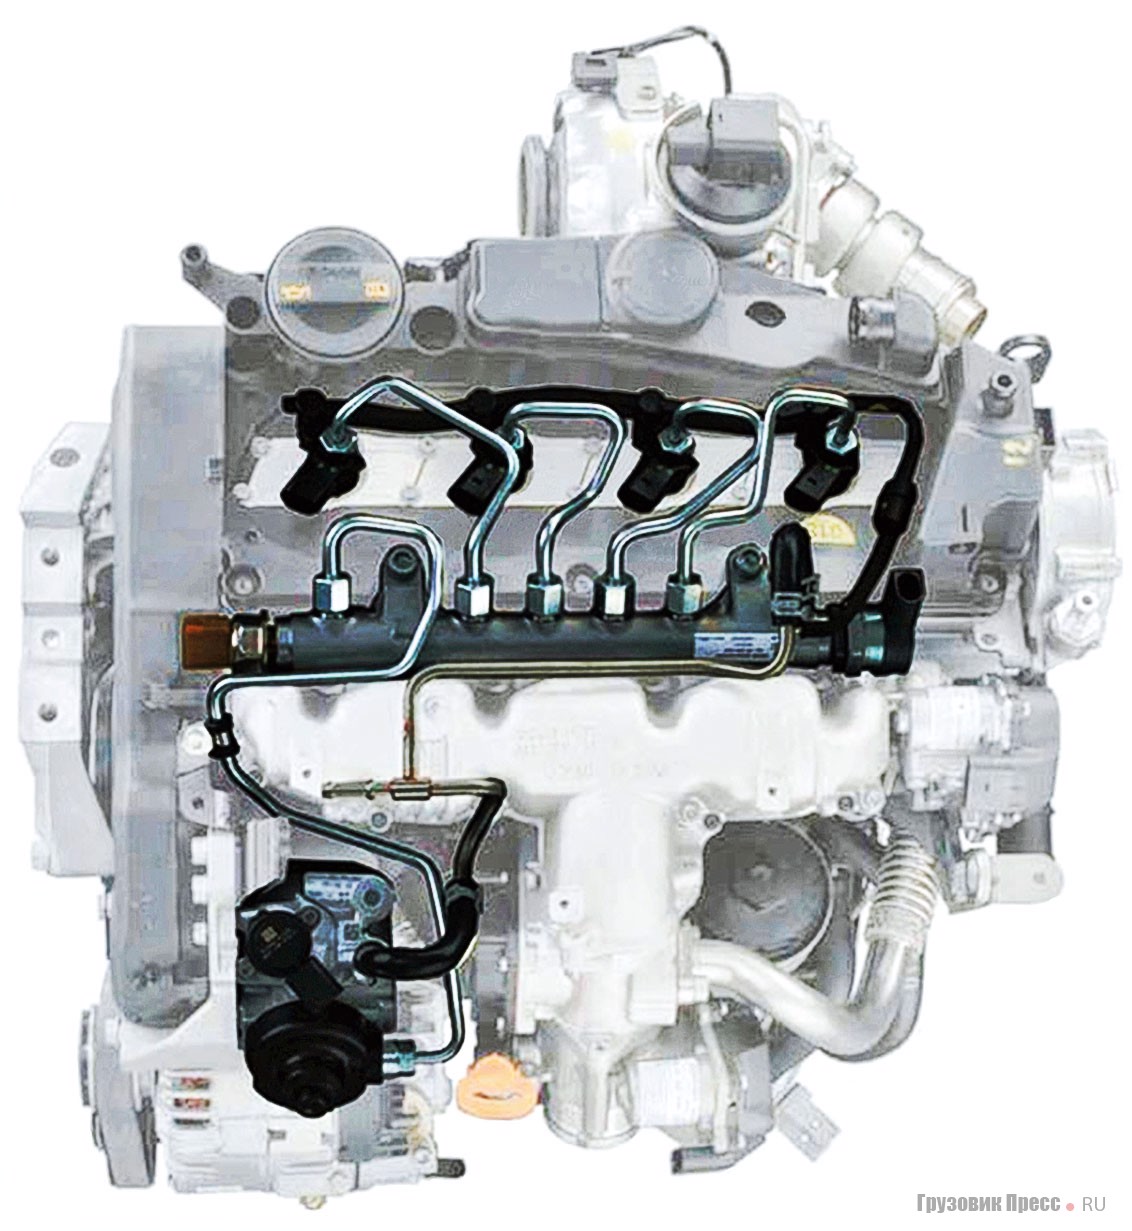 Дизельные двигатели ЯМЗ-530 оснащены самой совершенной топливной аппаратурой